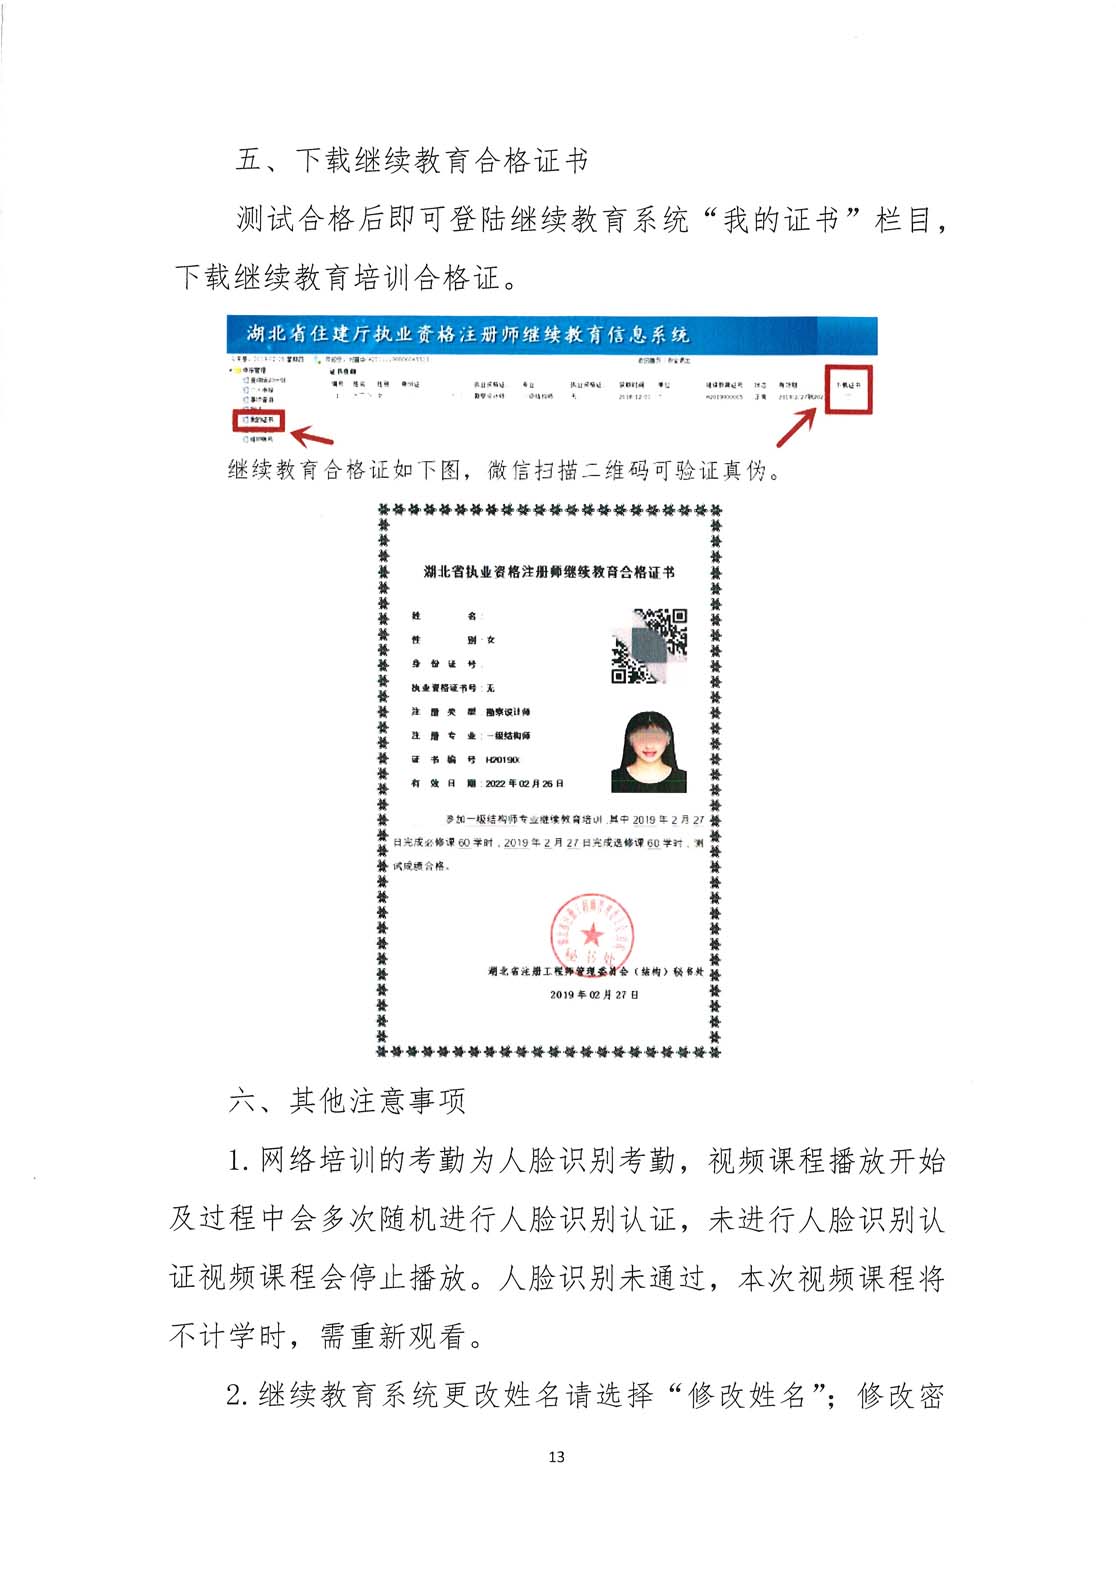 武汉勘察设计协会关于开展2020年武汉市注册建筑师、注册结构工程师专业技术继续教育网络培训的通知